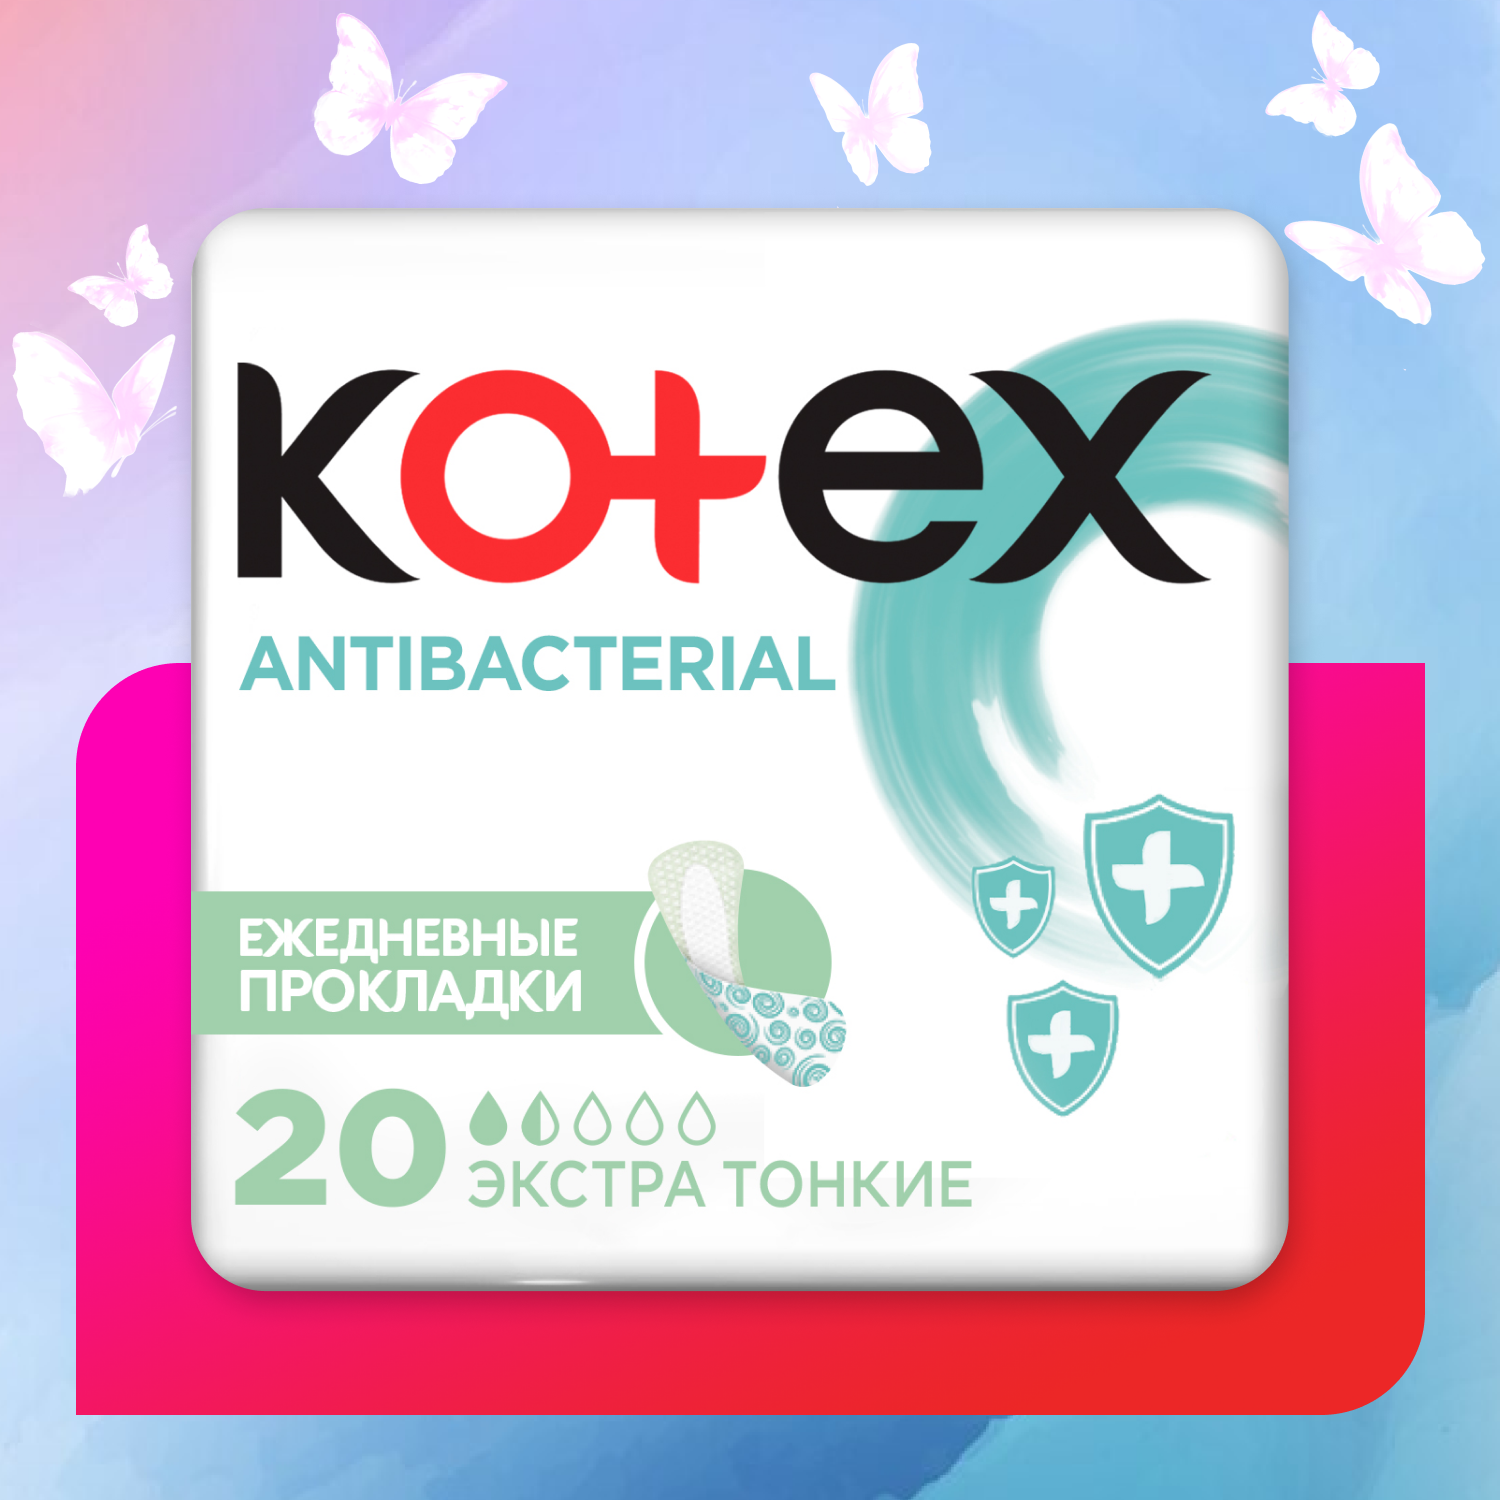 Прокладки KOTEX Antibacterial Экстра ежедневные тонкие 20шт - фото 1